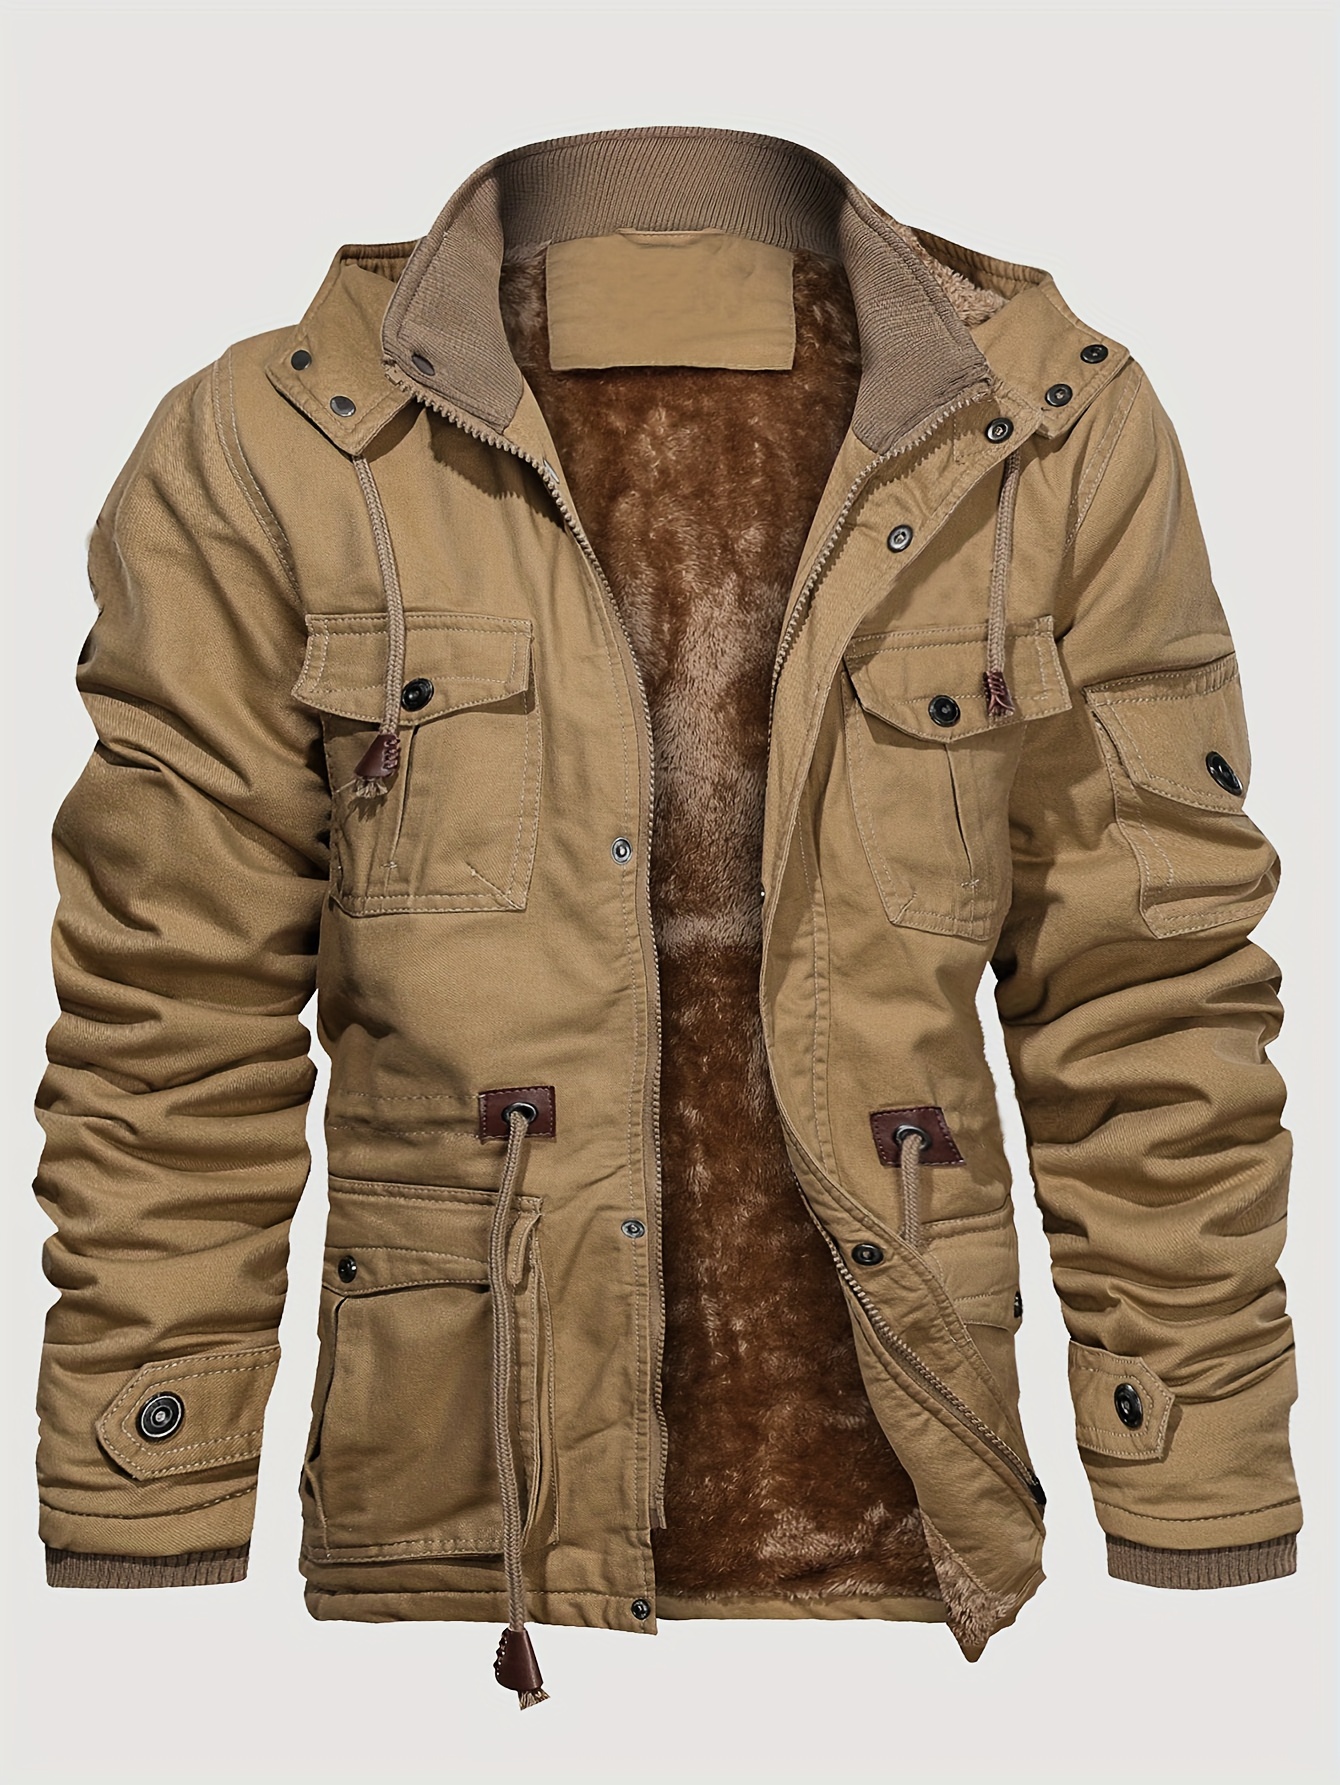 Non-Stretch Cargo Zip Up Jacket, Men's S Warmolid Pocket Hiking Outwear Coat Jacket Windproof,Winter Outfit,Windbreaker,Temu